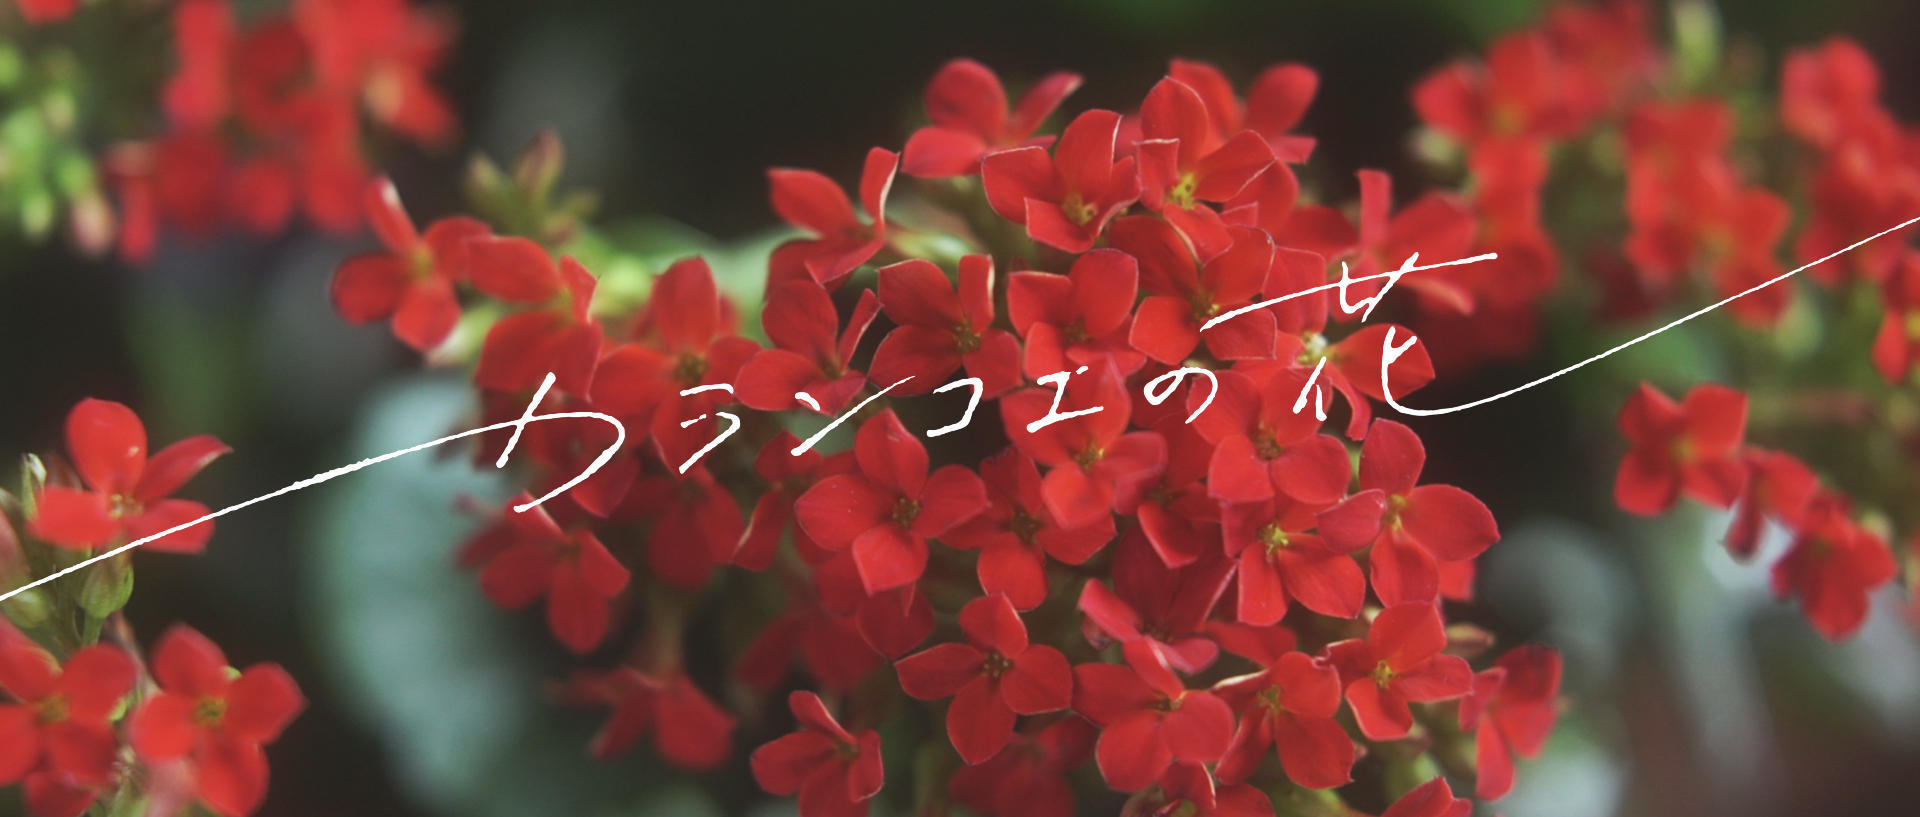 映画「カランコエの花」のタイトルロゴと花の写真